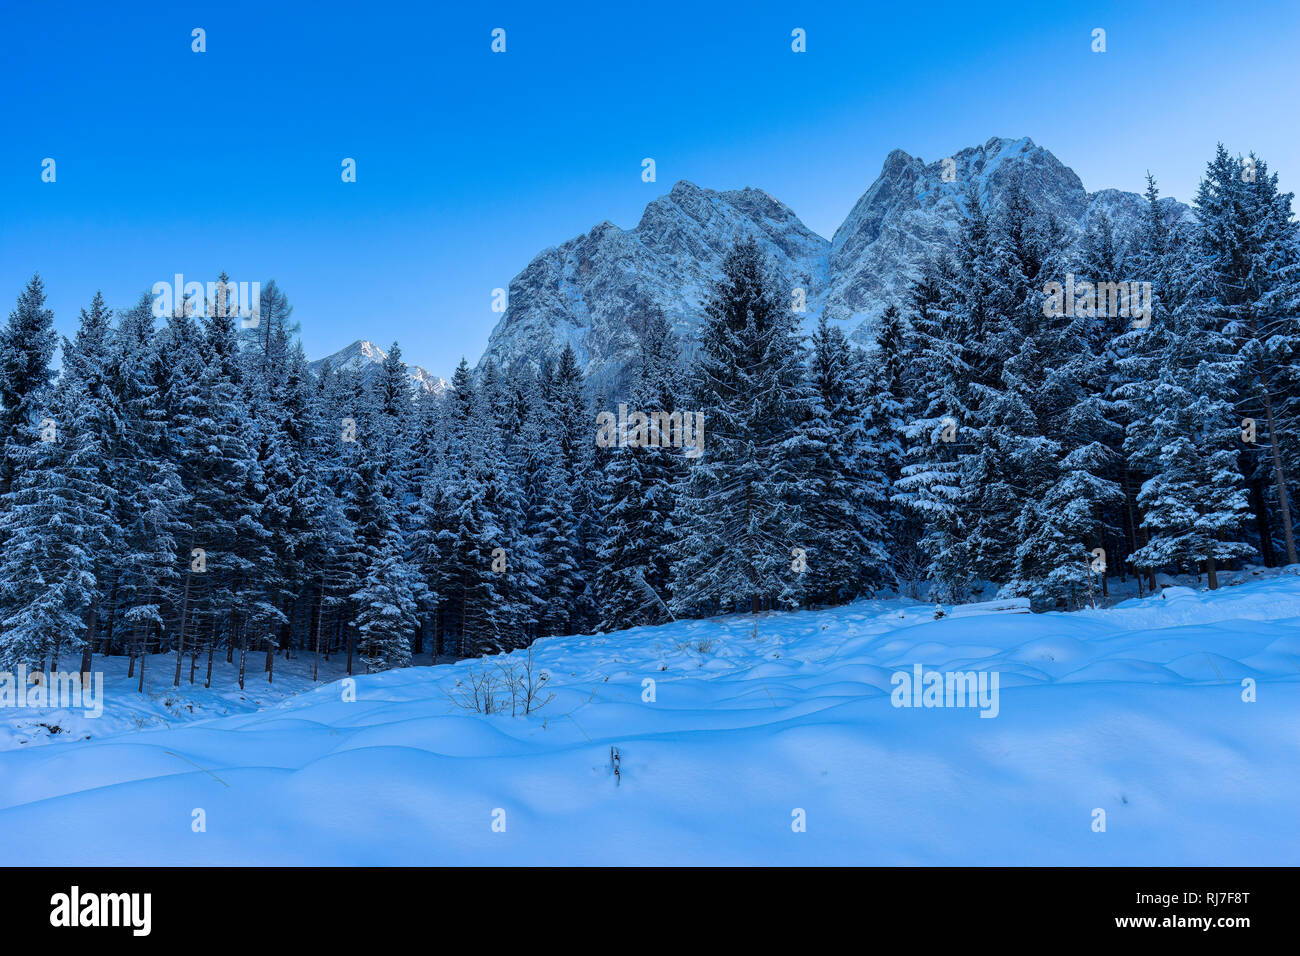 Deutschland, Bayern, Bayerische Alpen, Grainau, Waxensteine im Winter mit Alpspitze im Hintergrund Stock Photo